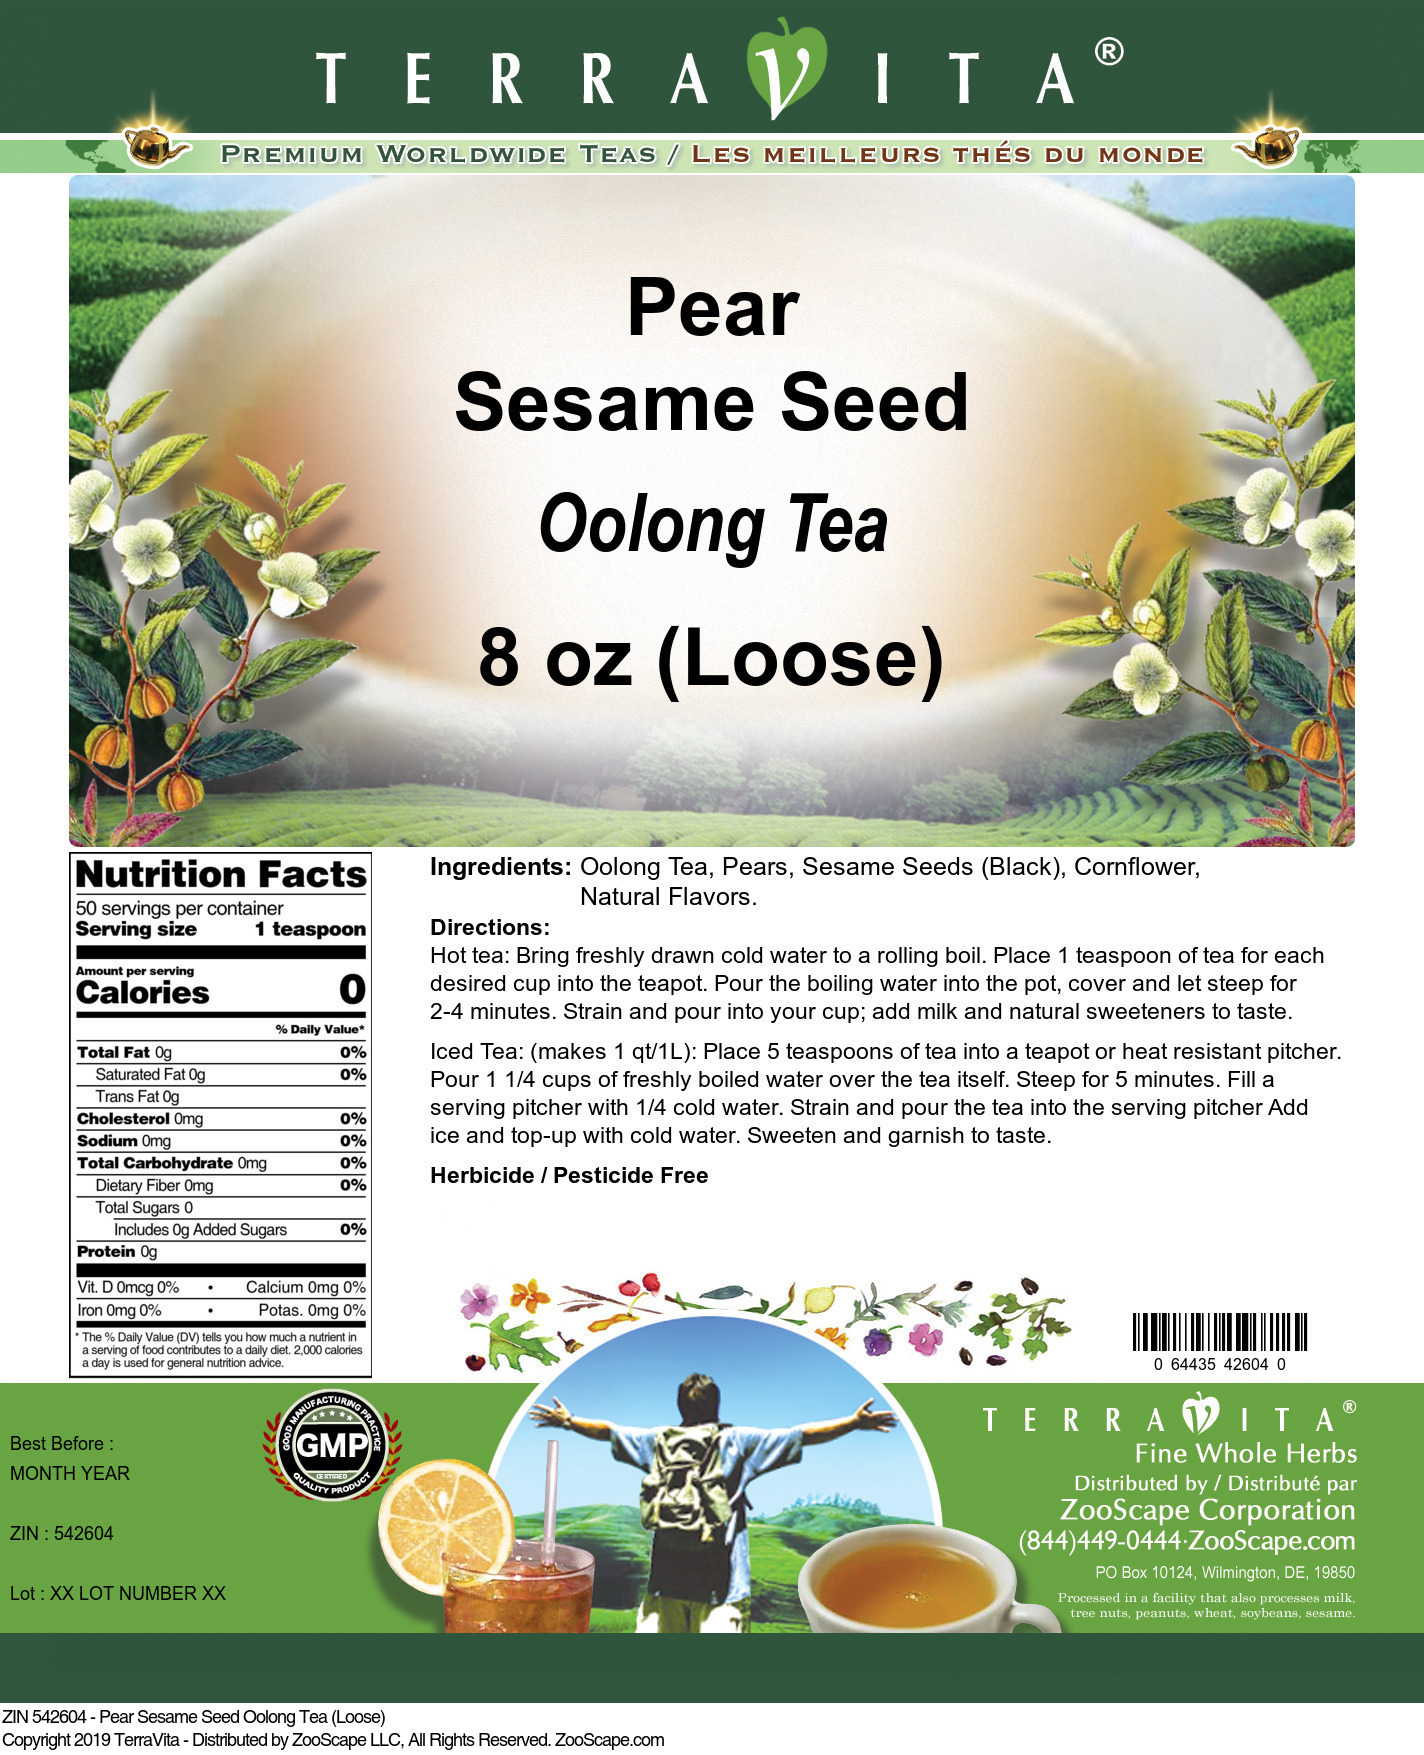 Pear Sesame Seed Oolong Tea (Loose) - Label